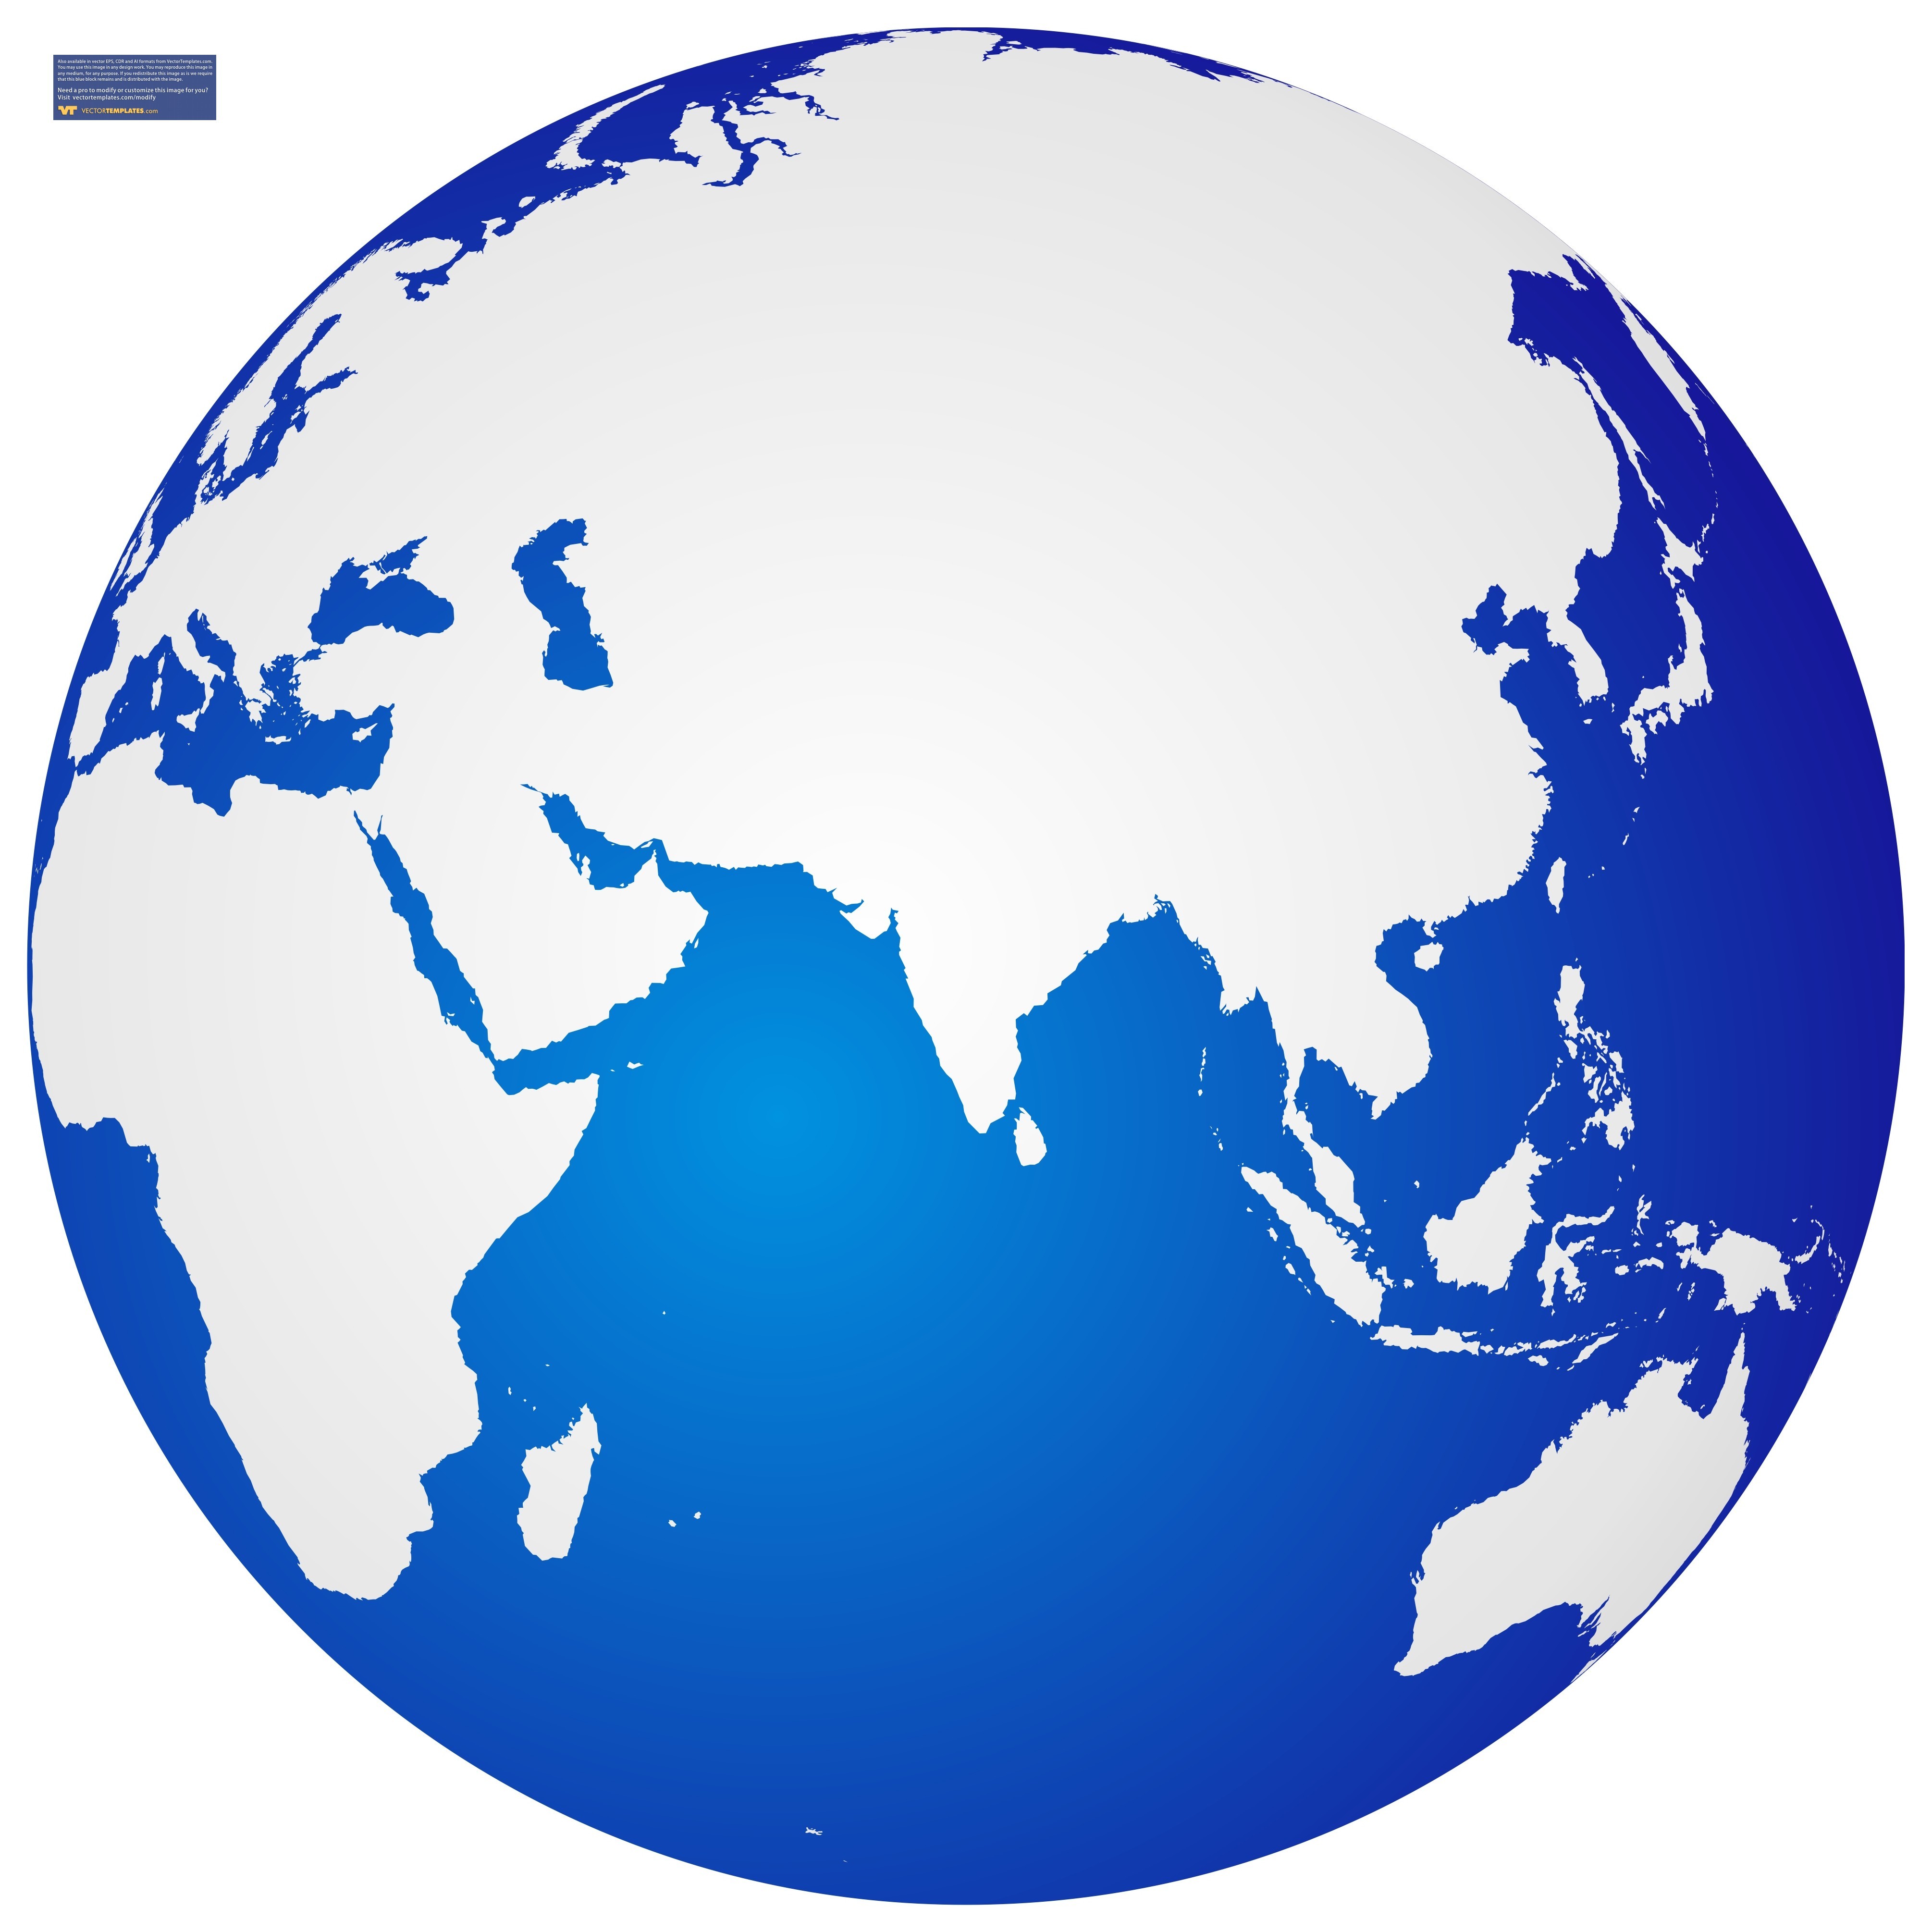 global logo free download